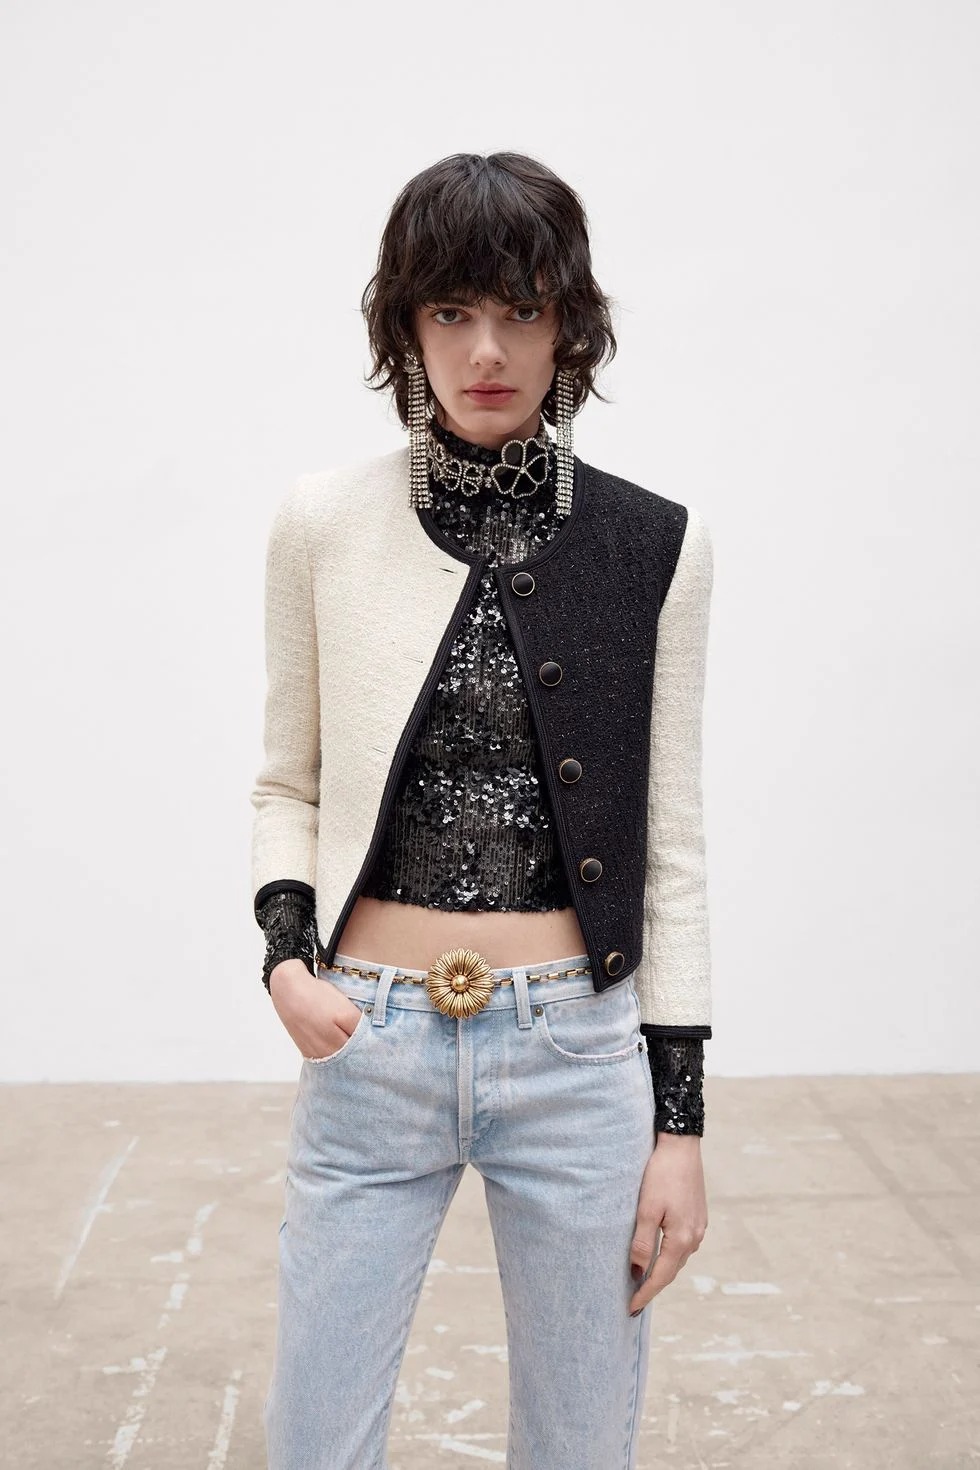 Công chúng thừa nhận sự giống nhau giữa chiếc áo tweed của Saint Laurent với áo tweed của Chanel.